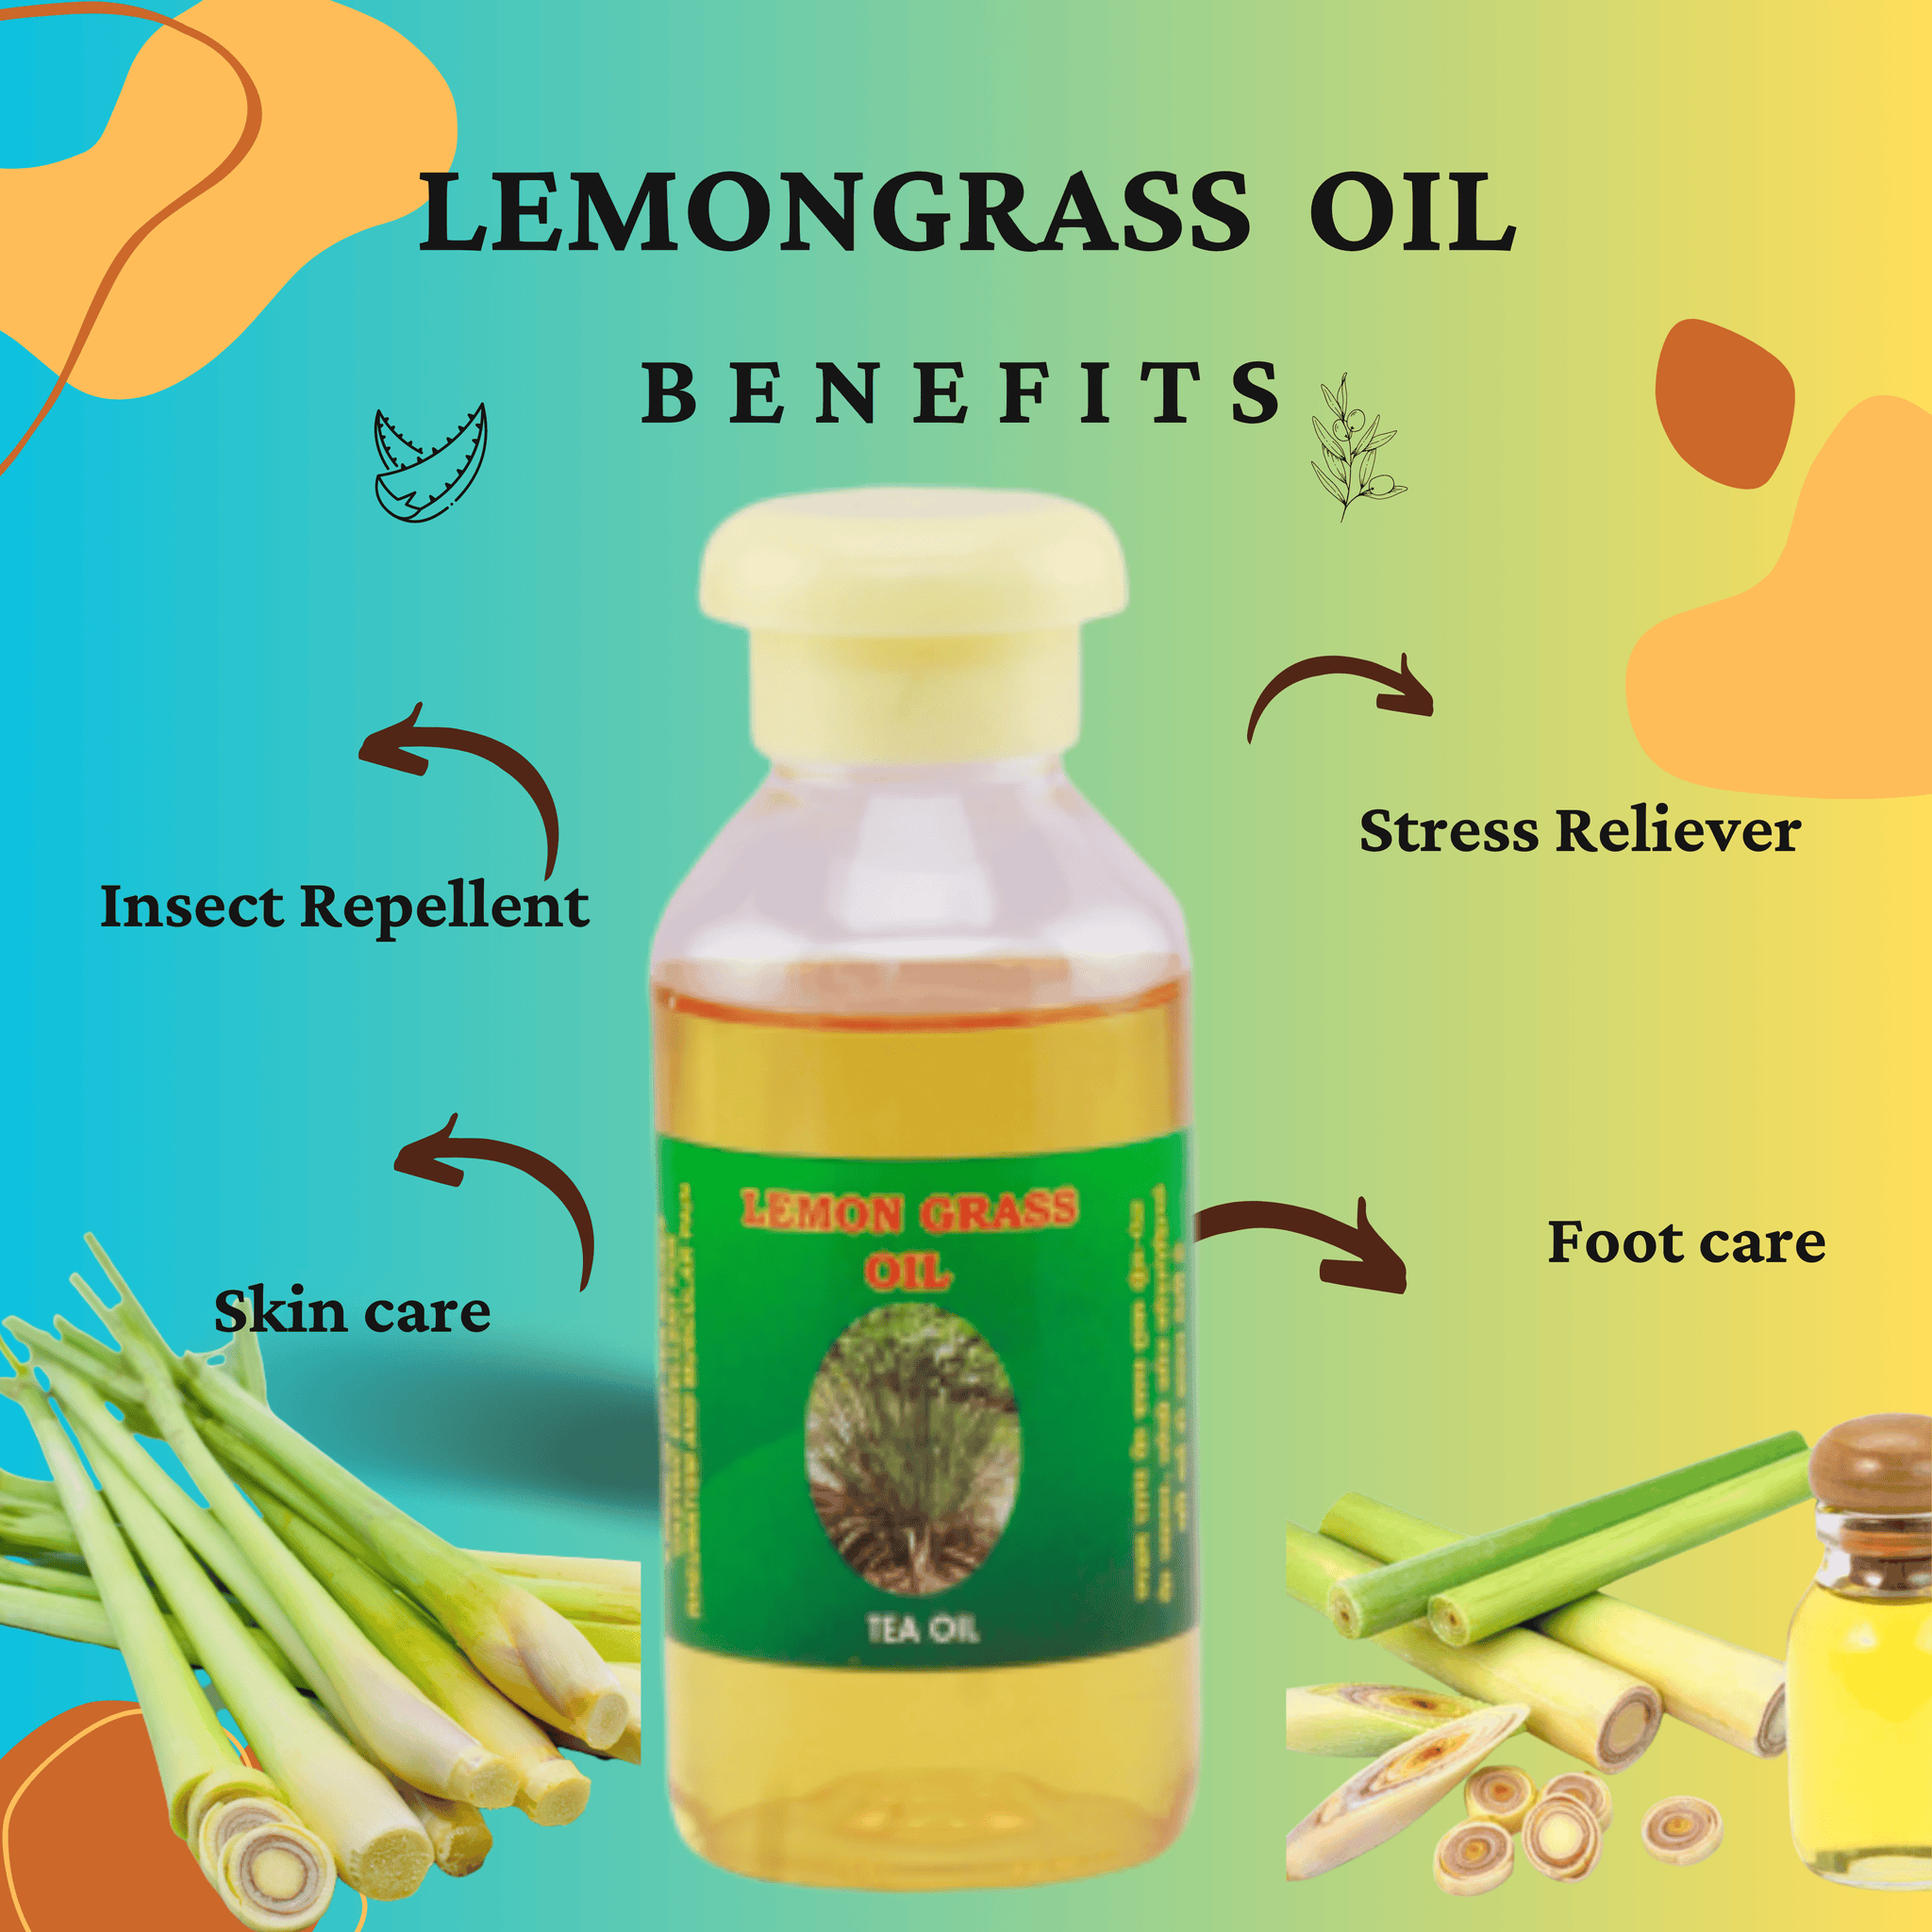 Lemongrass essential oil